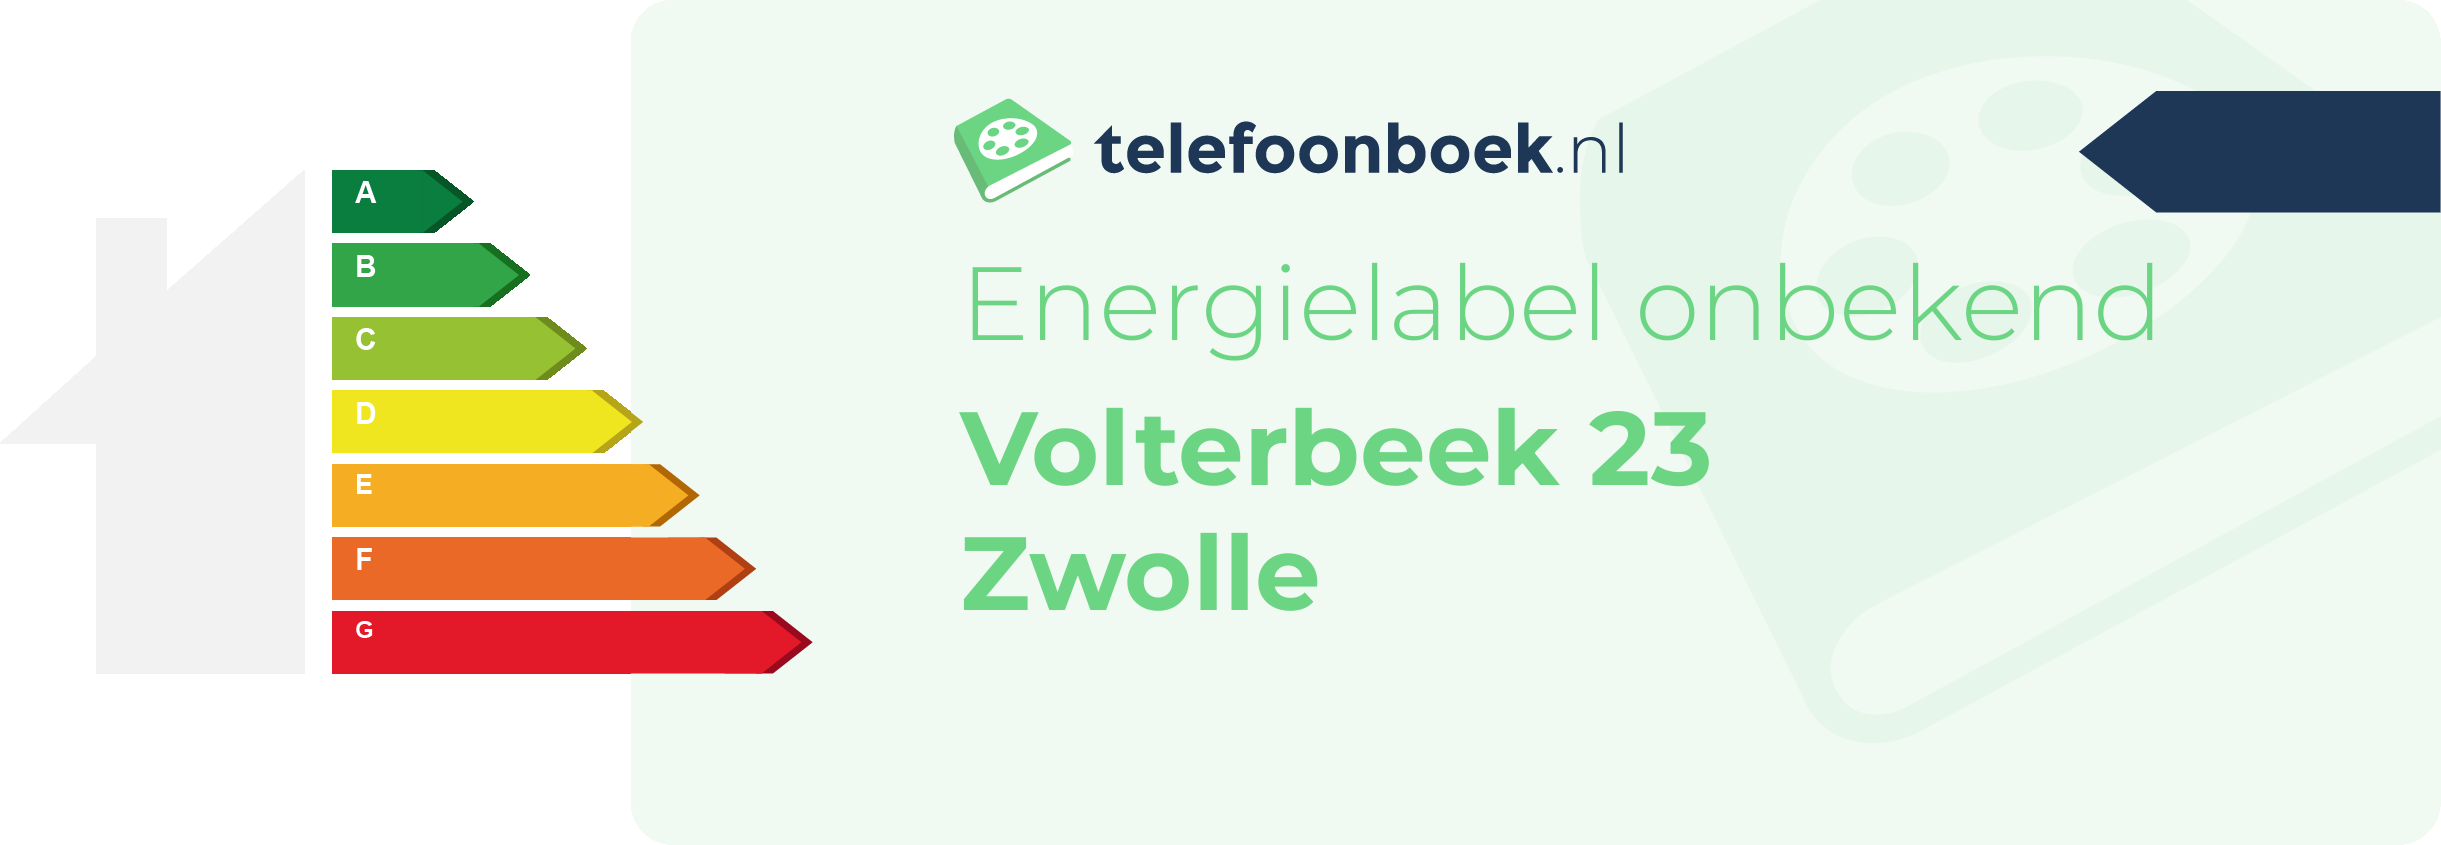 Energielabel Volterbeek 23 Zwolle